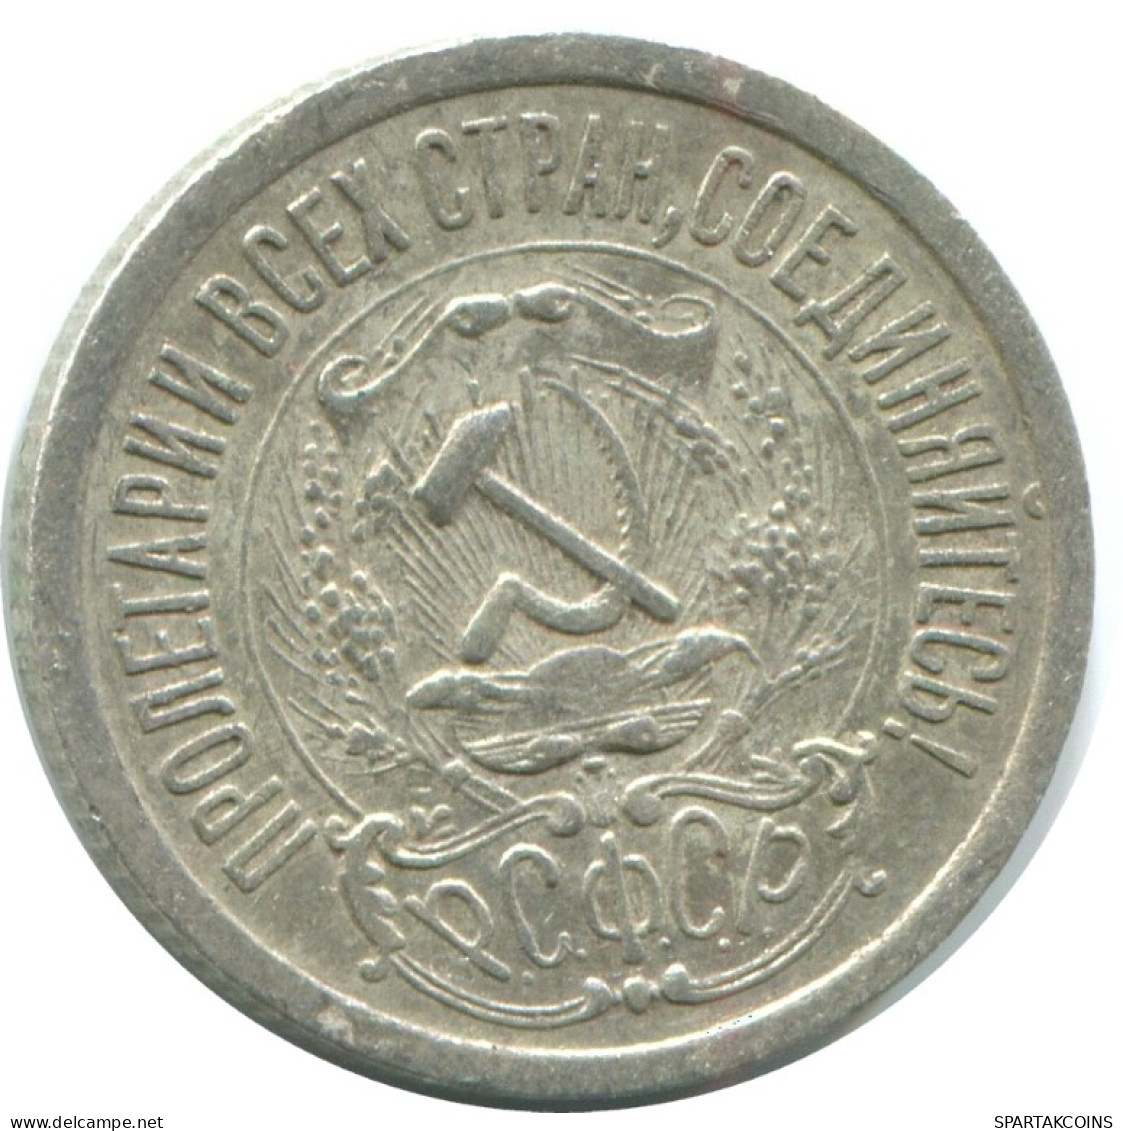 15 KOPEKS 1923 RUSSLAND RUSSIA RSFSR SILBER Münze HIGH GRADE #AF151.4.D.A - Russia